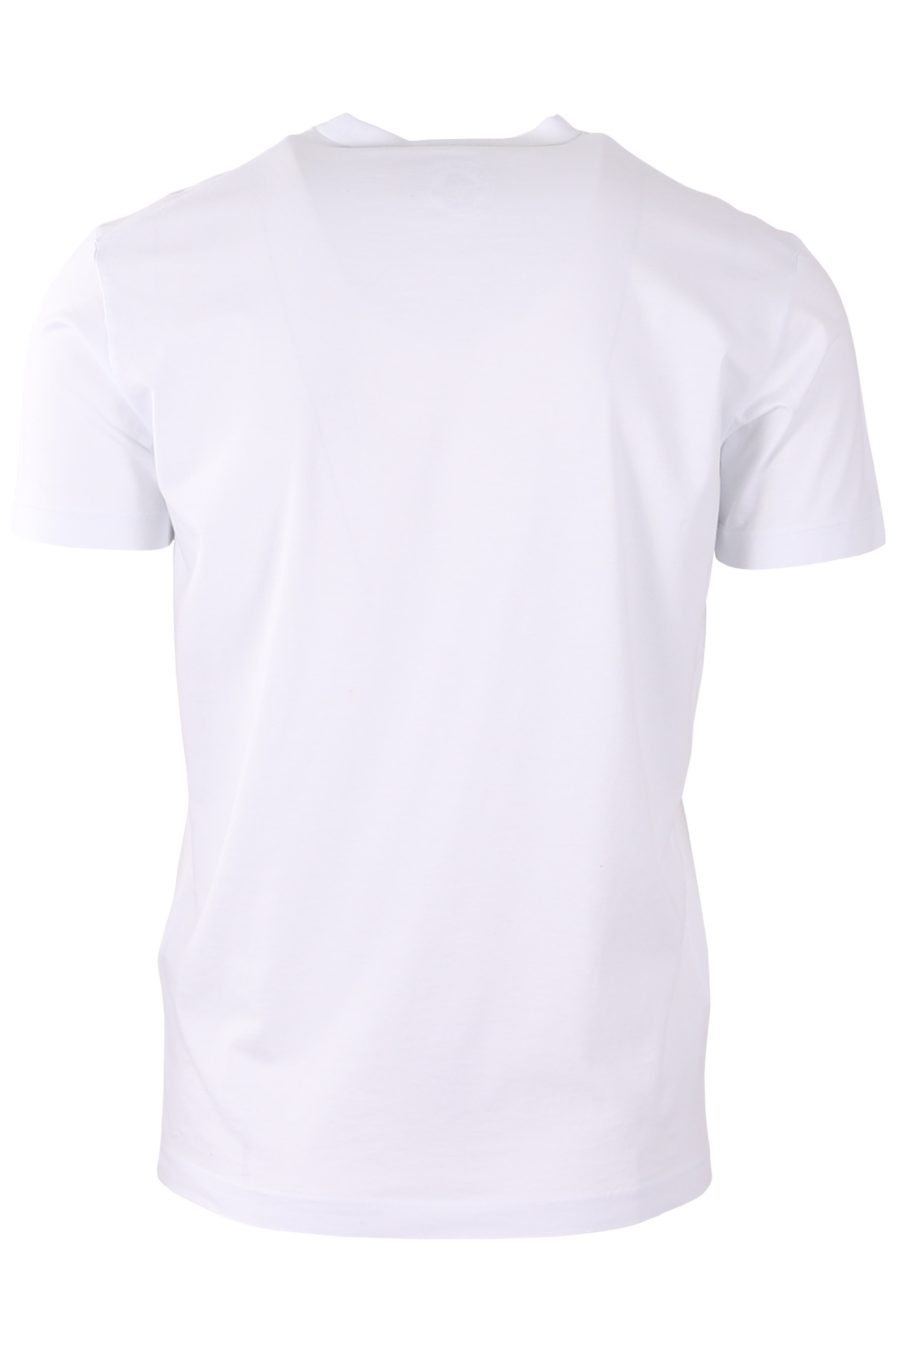 T-shirt Dsquared2 blanc logo noir made in italy - 27af635843714ae3556a5f070778d0dd40dadb1b